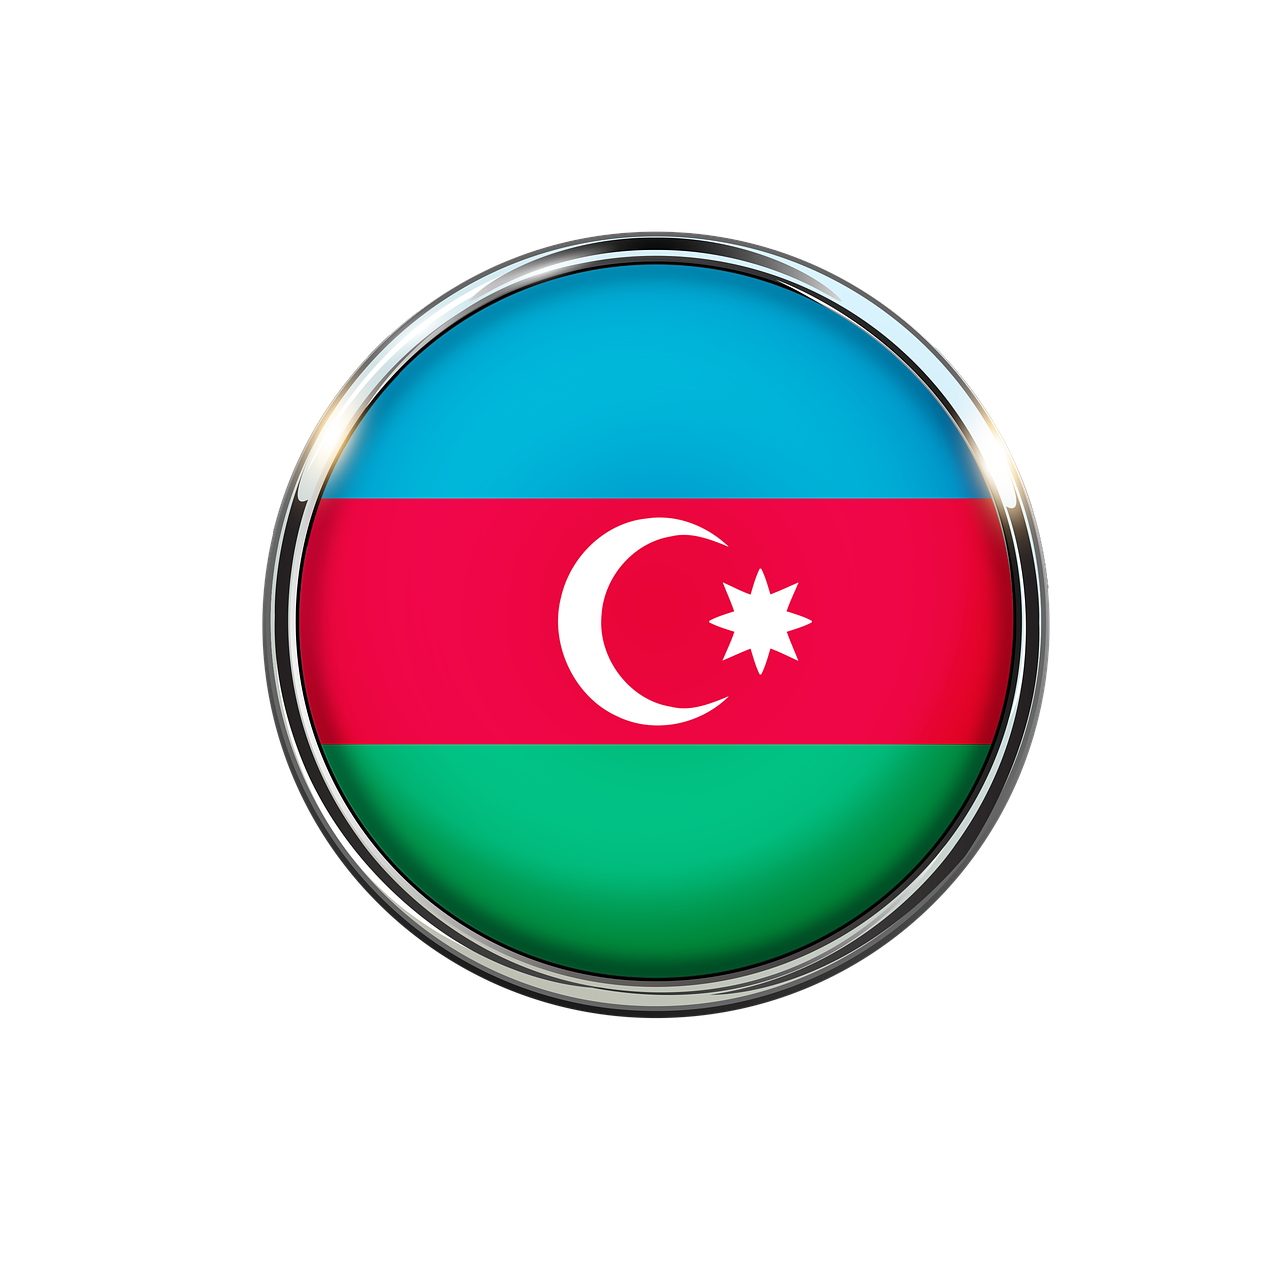 Азербайджан азер. Флаг Азербайджана. Флаг Азербайджана круглый. Республика Азербайджан флаг. Азербайджанские флаг Азербайджана.